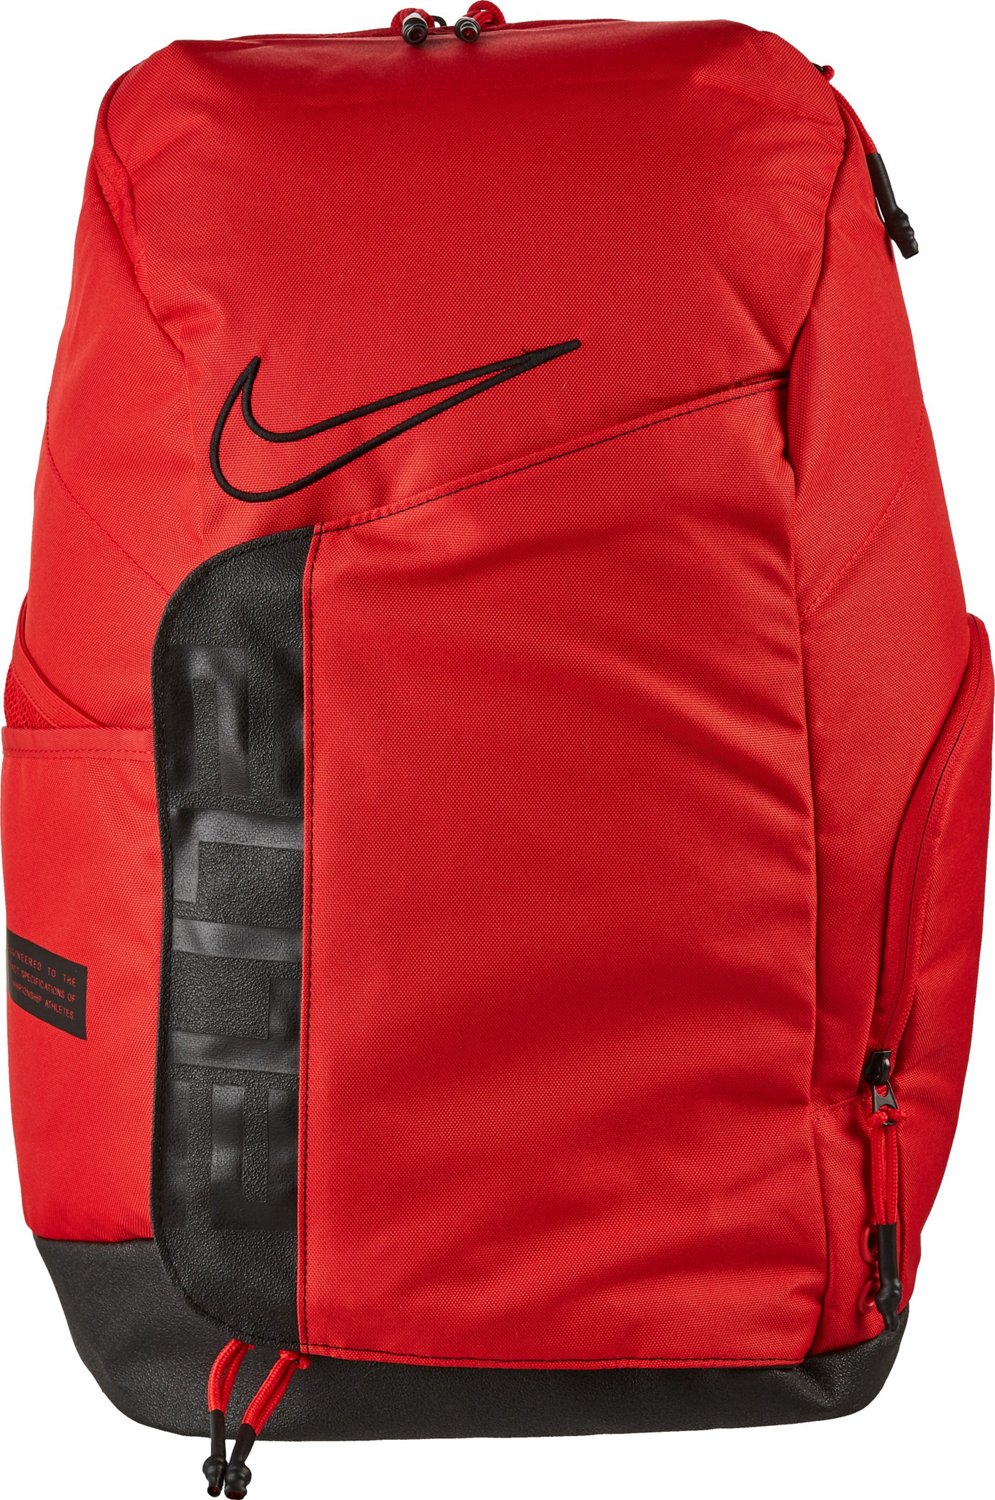 Nike Elite Pro Basketball Backpack | Academy